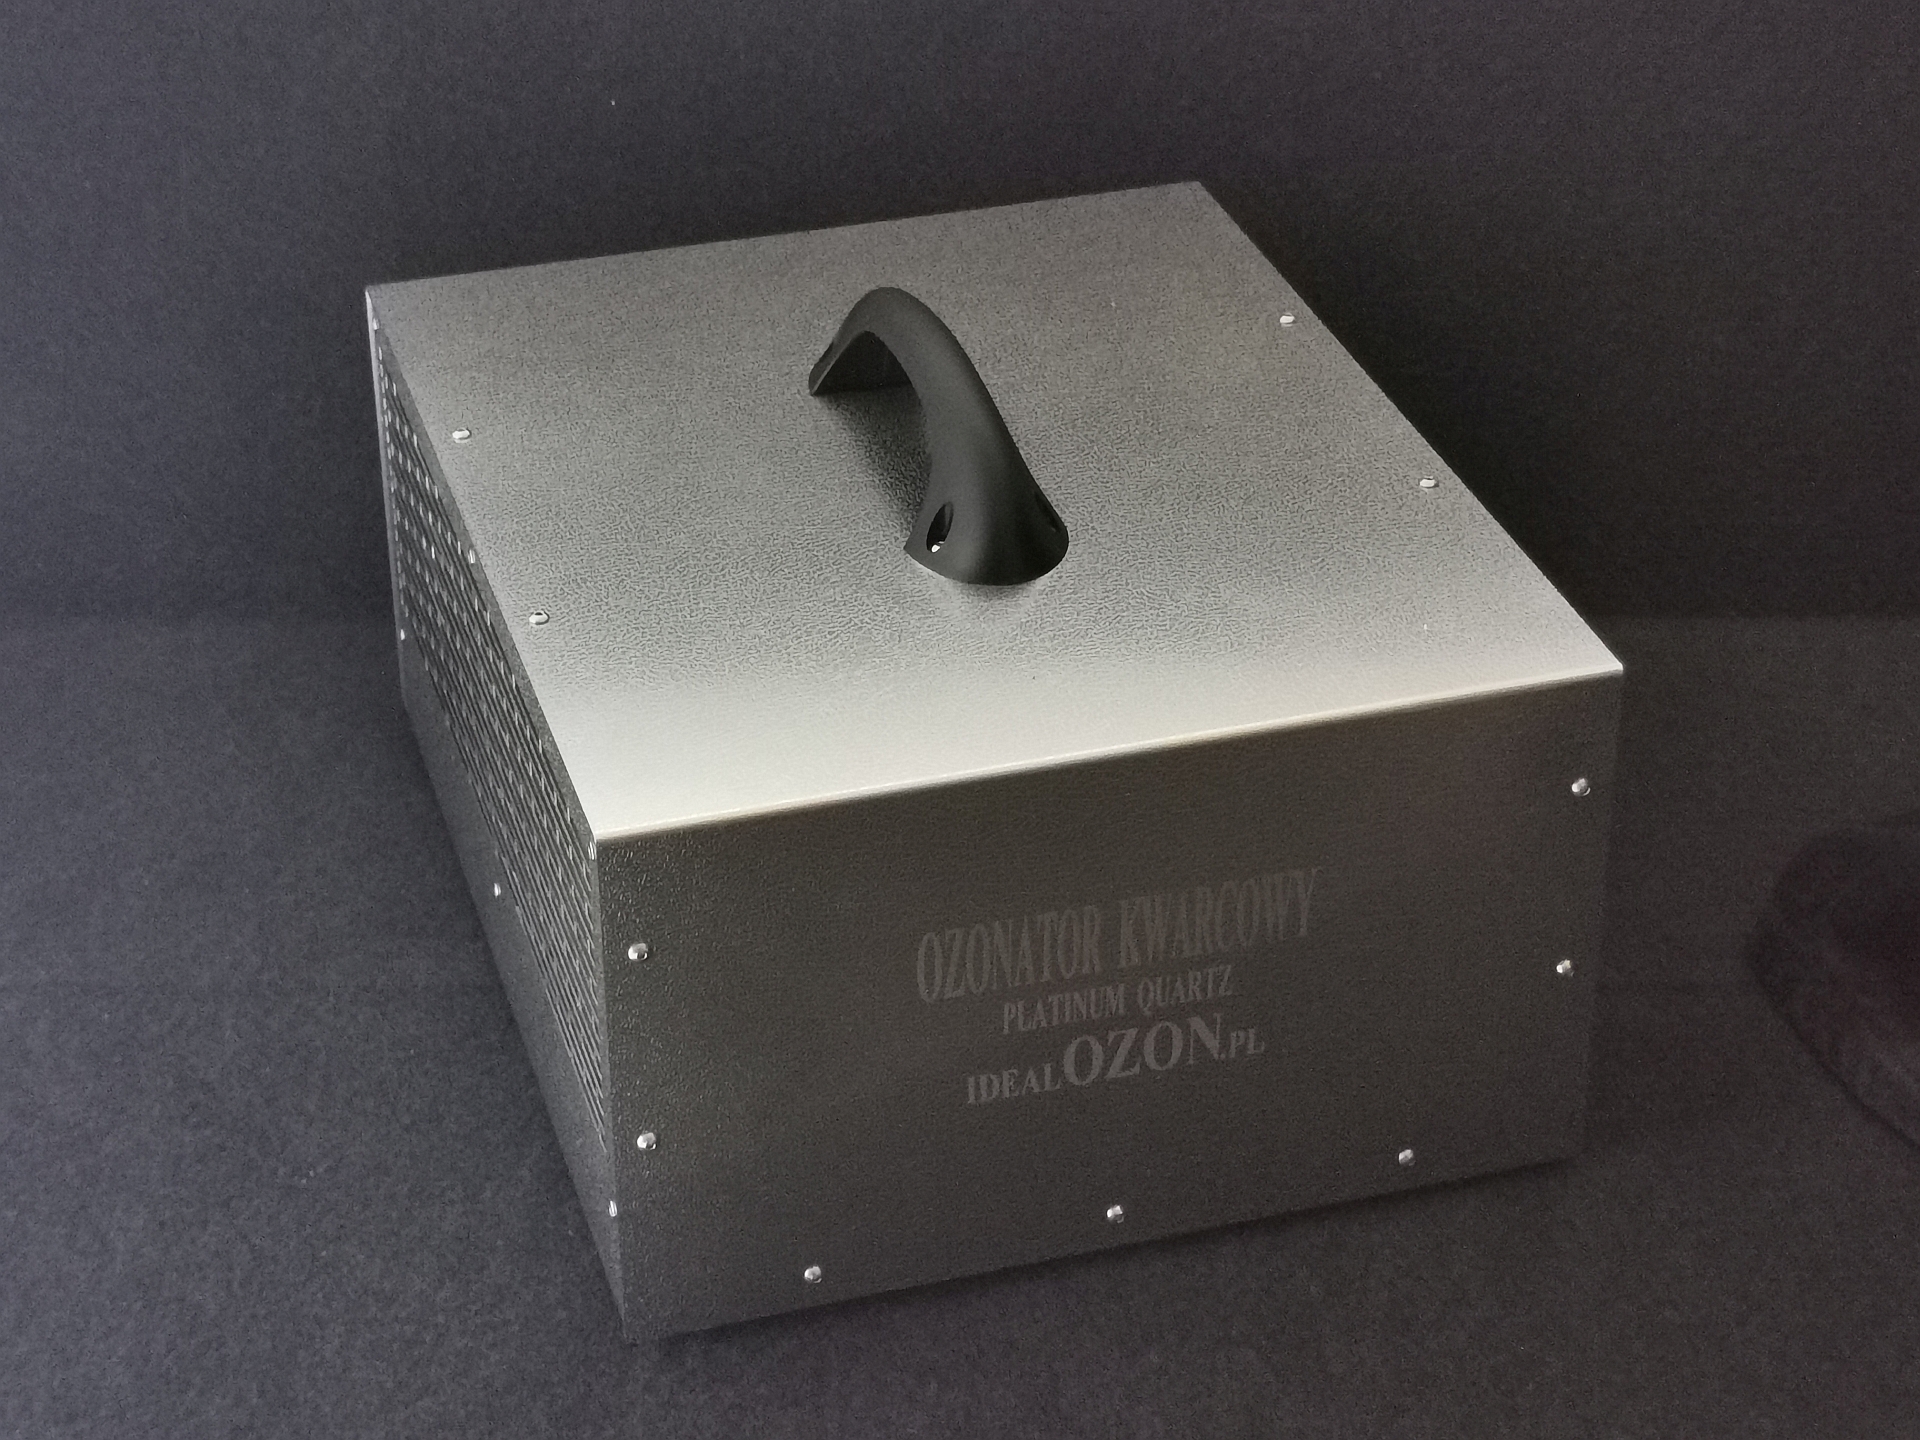 Ozonator kwarcowy V3M 8-80 g/h z wbudowanym miernikiem ozonu 1-100PPM